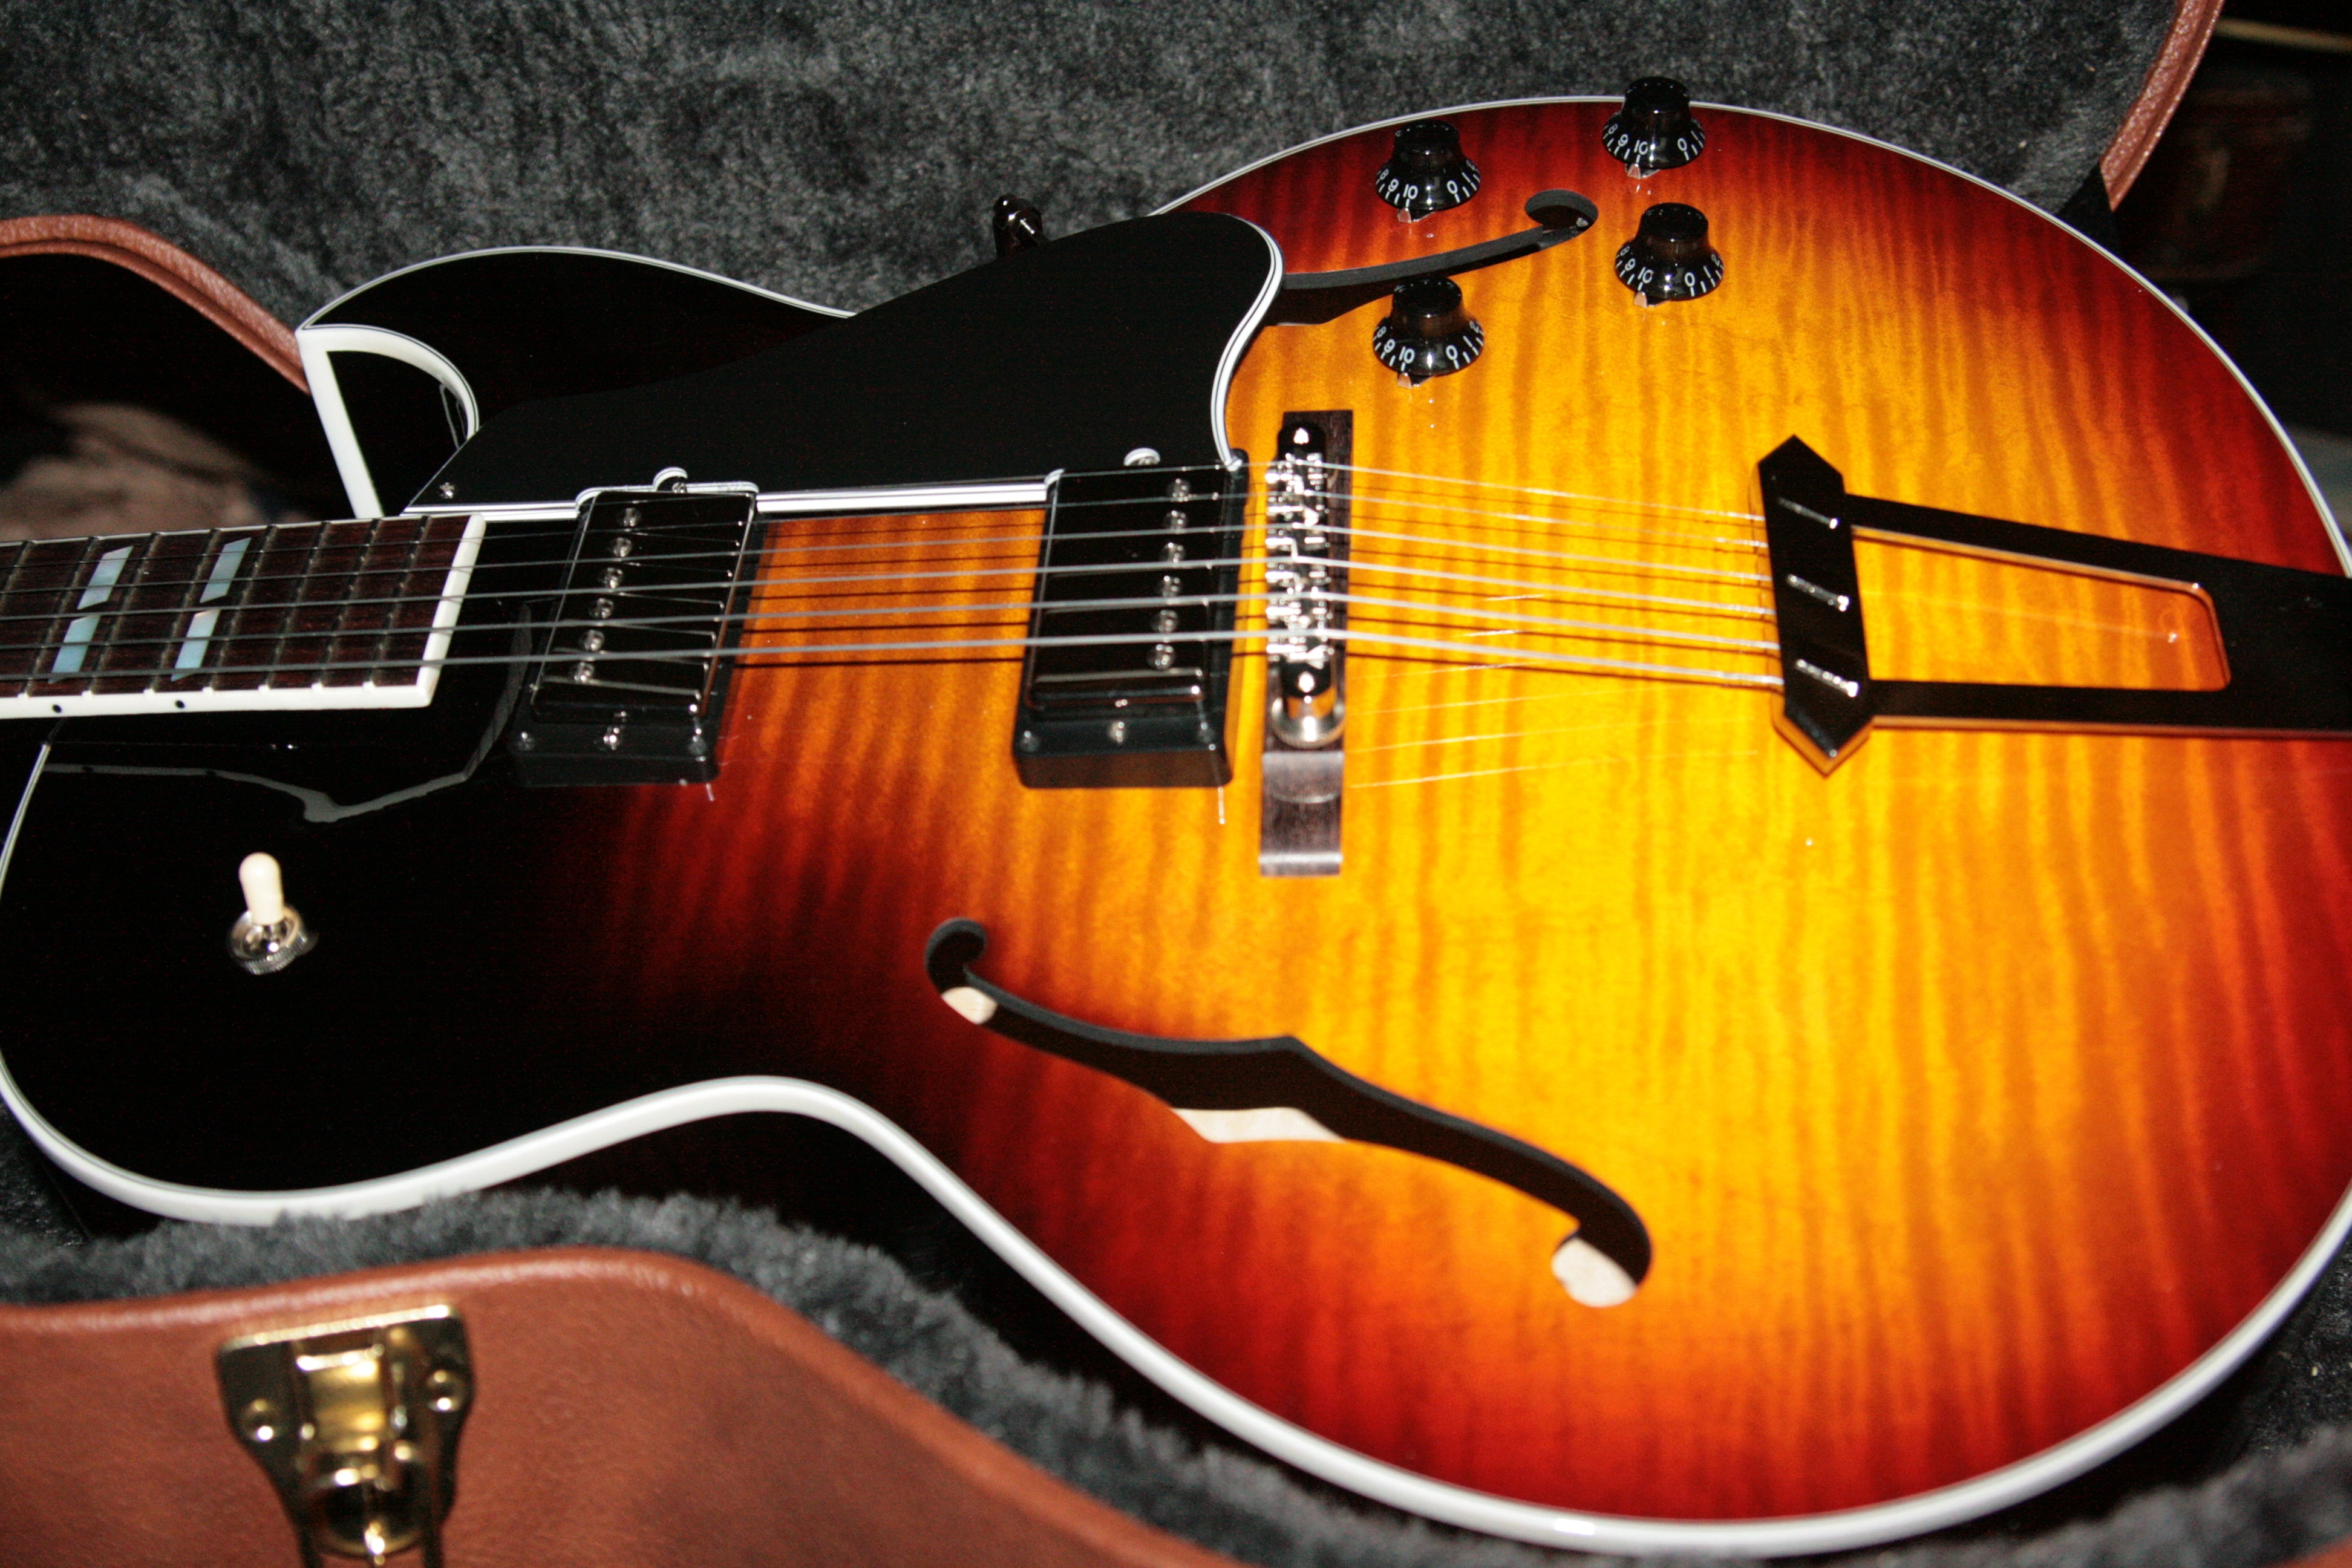 *SOLD*  2017 Gibson ES-175 FIGURED Vintage Sunburst Memphis Jazz Archtop 335 355